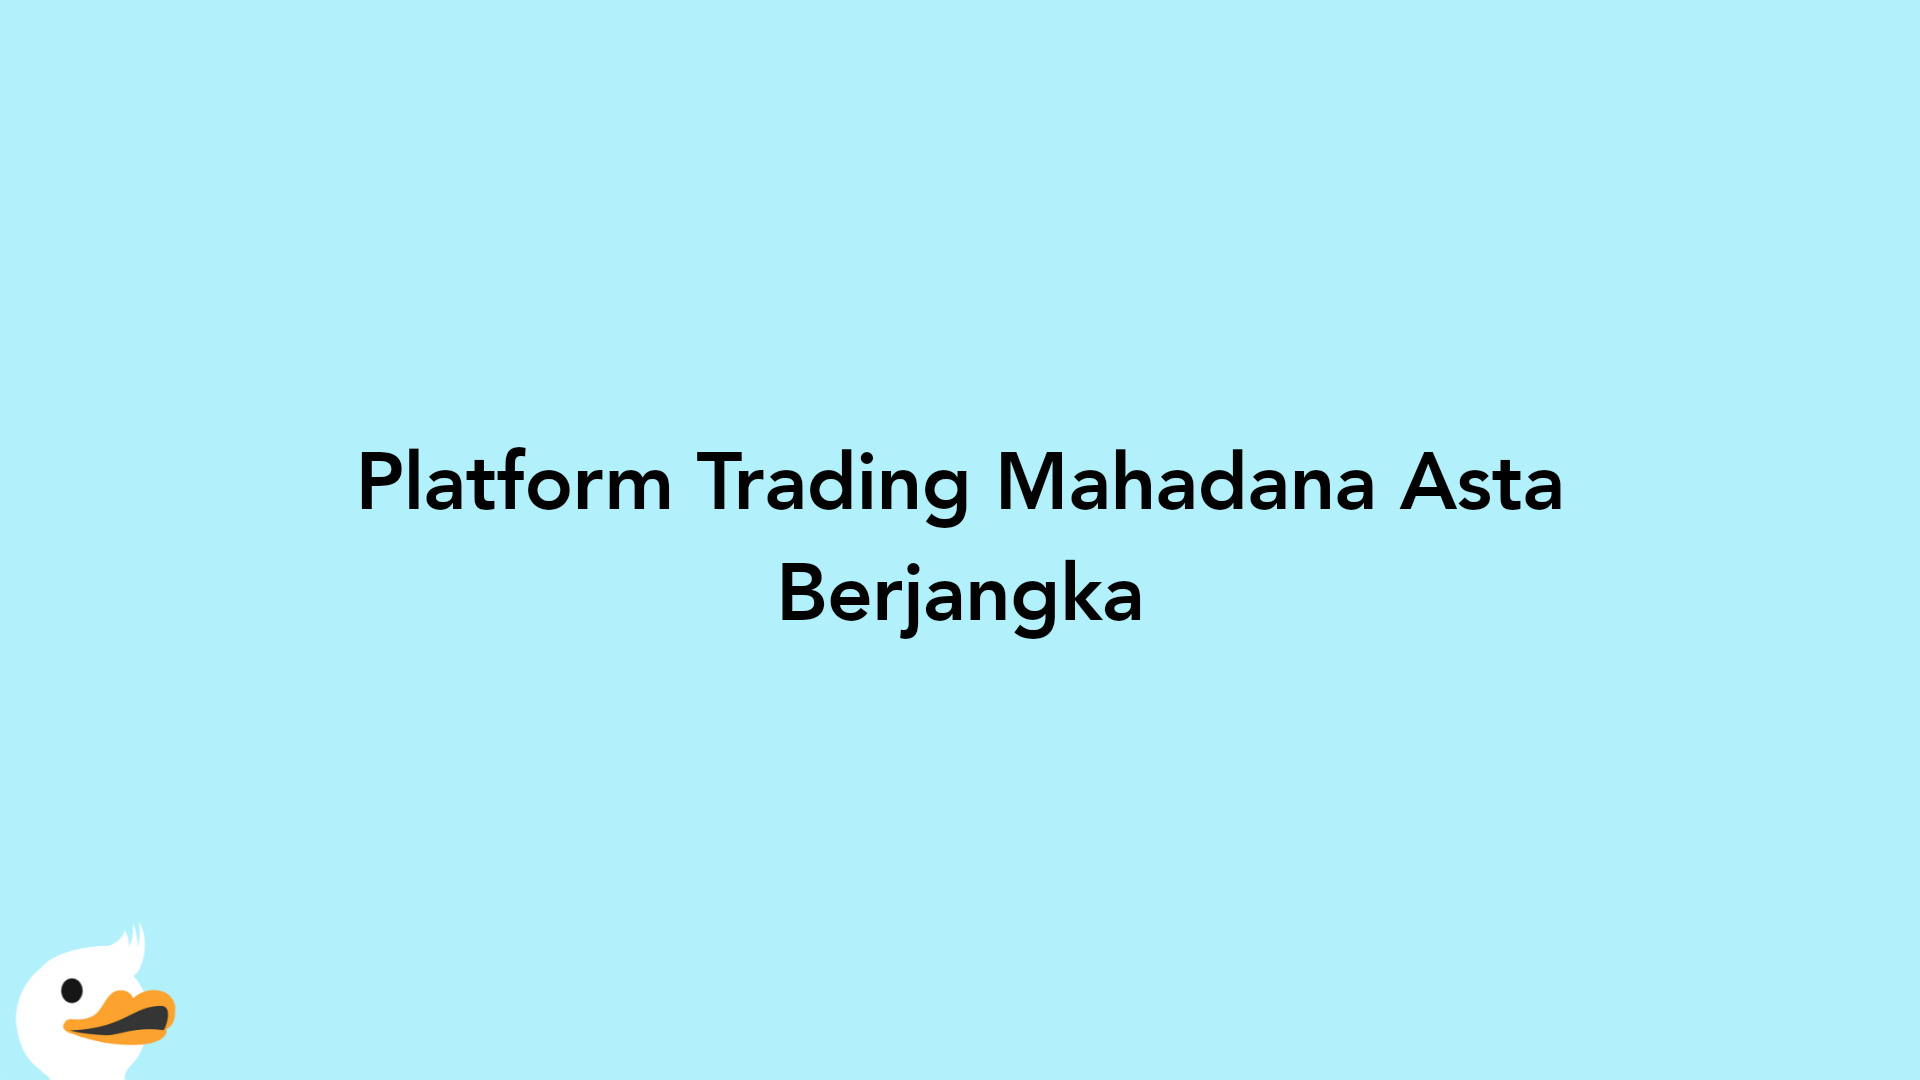 Platform Trading Mahadana Asta Berjangka